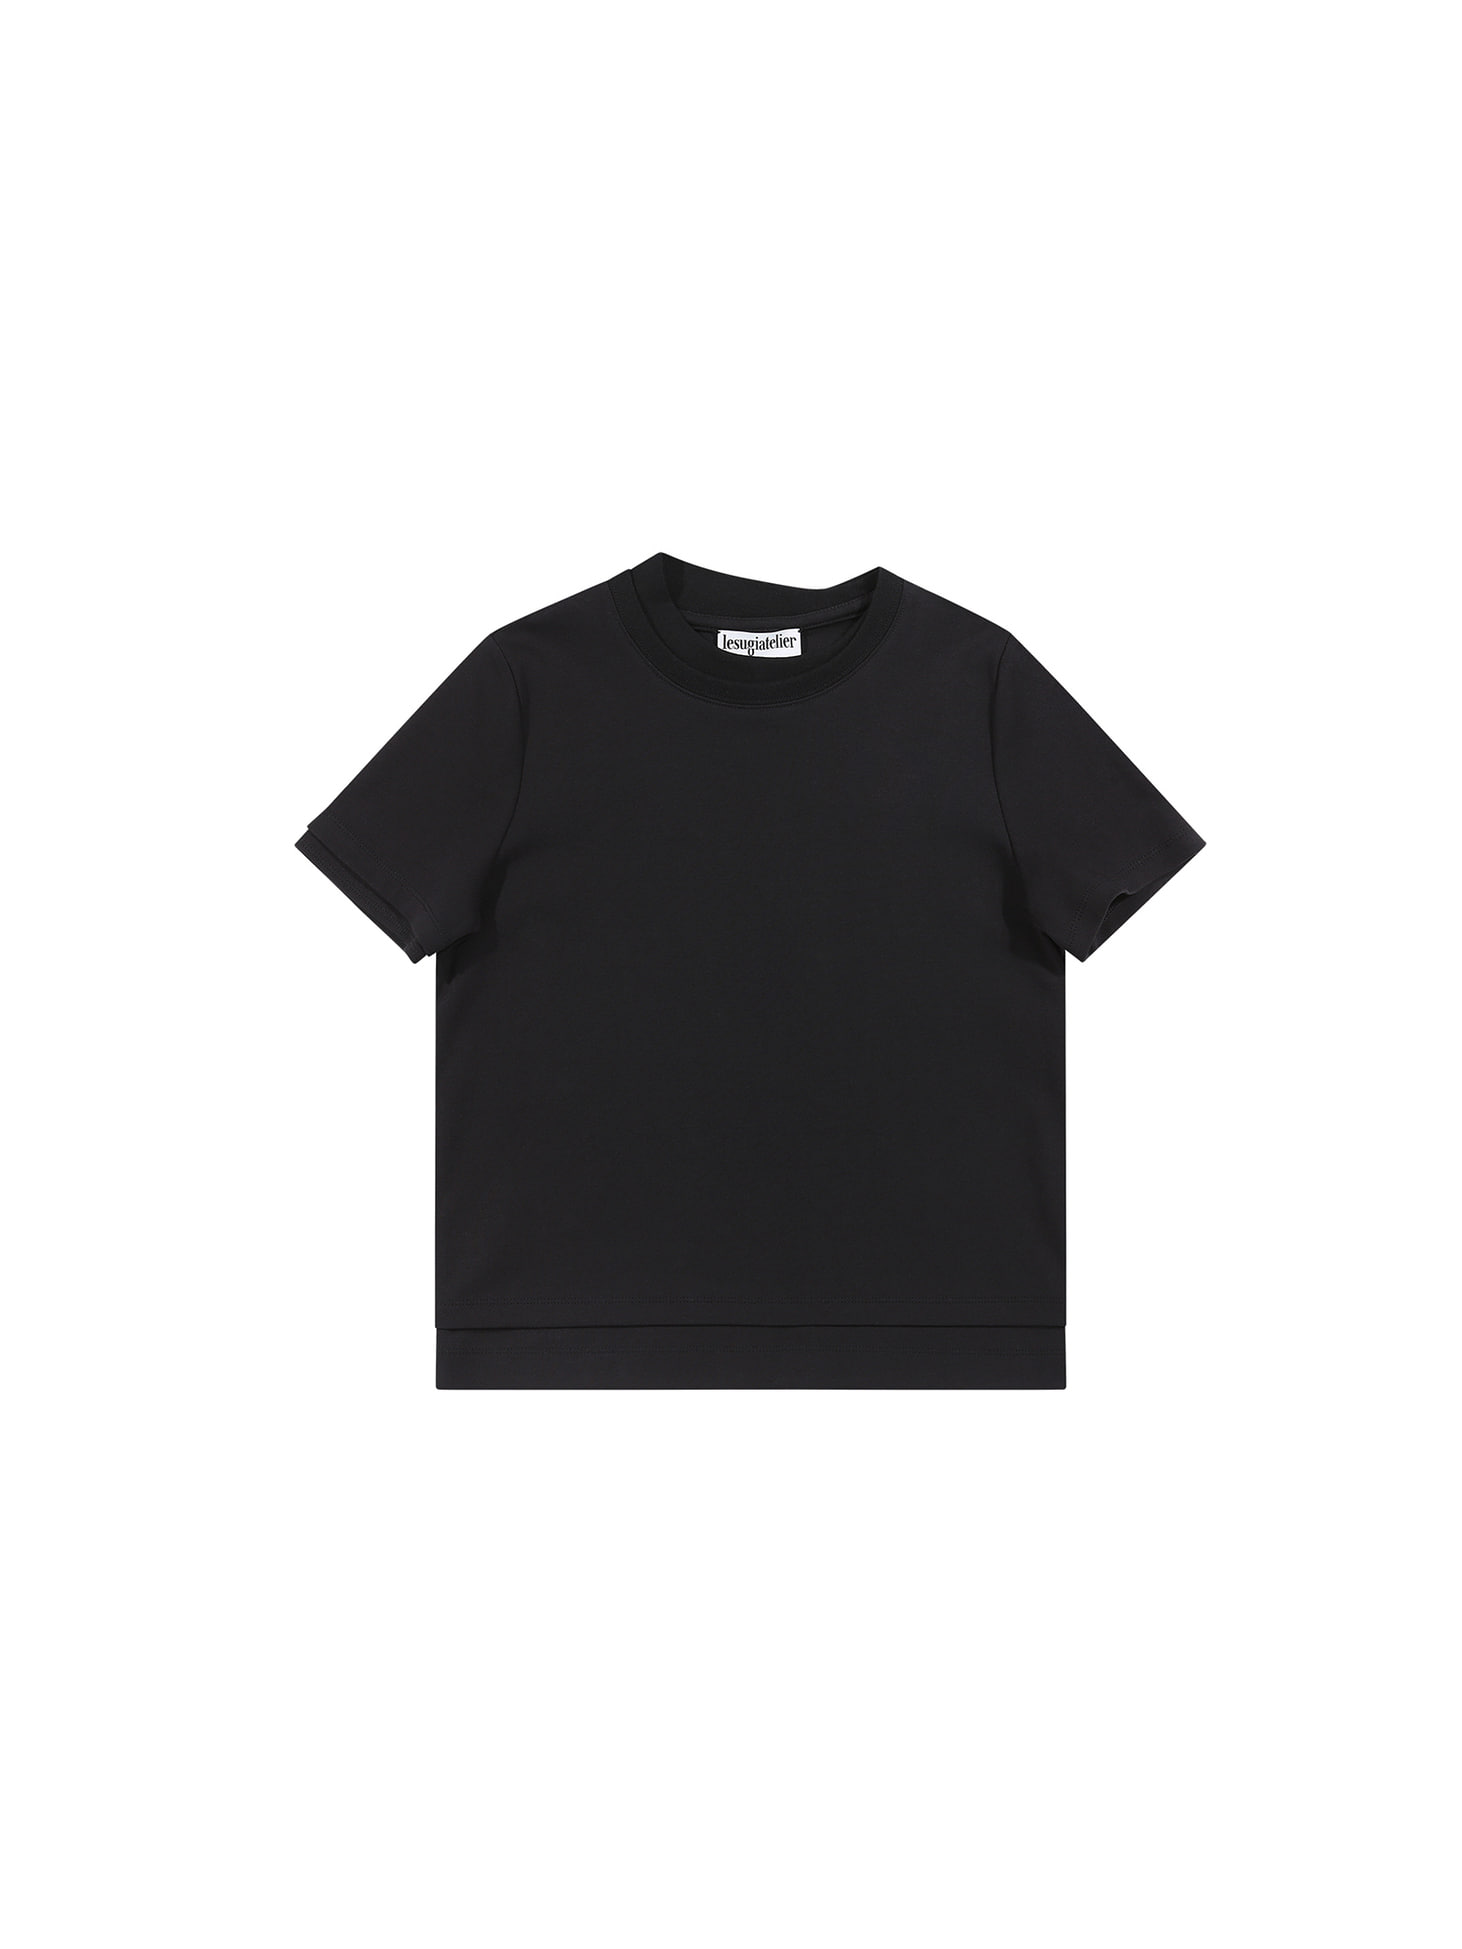 Double edge t-shirt / Black